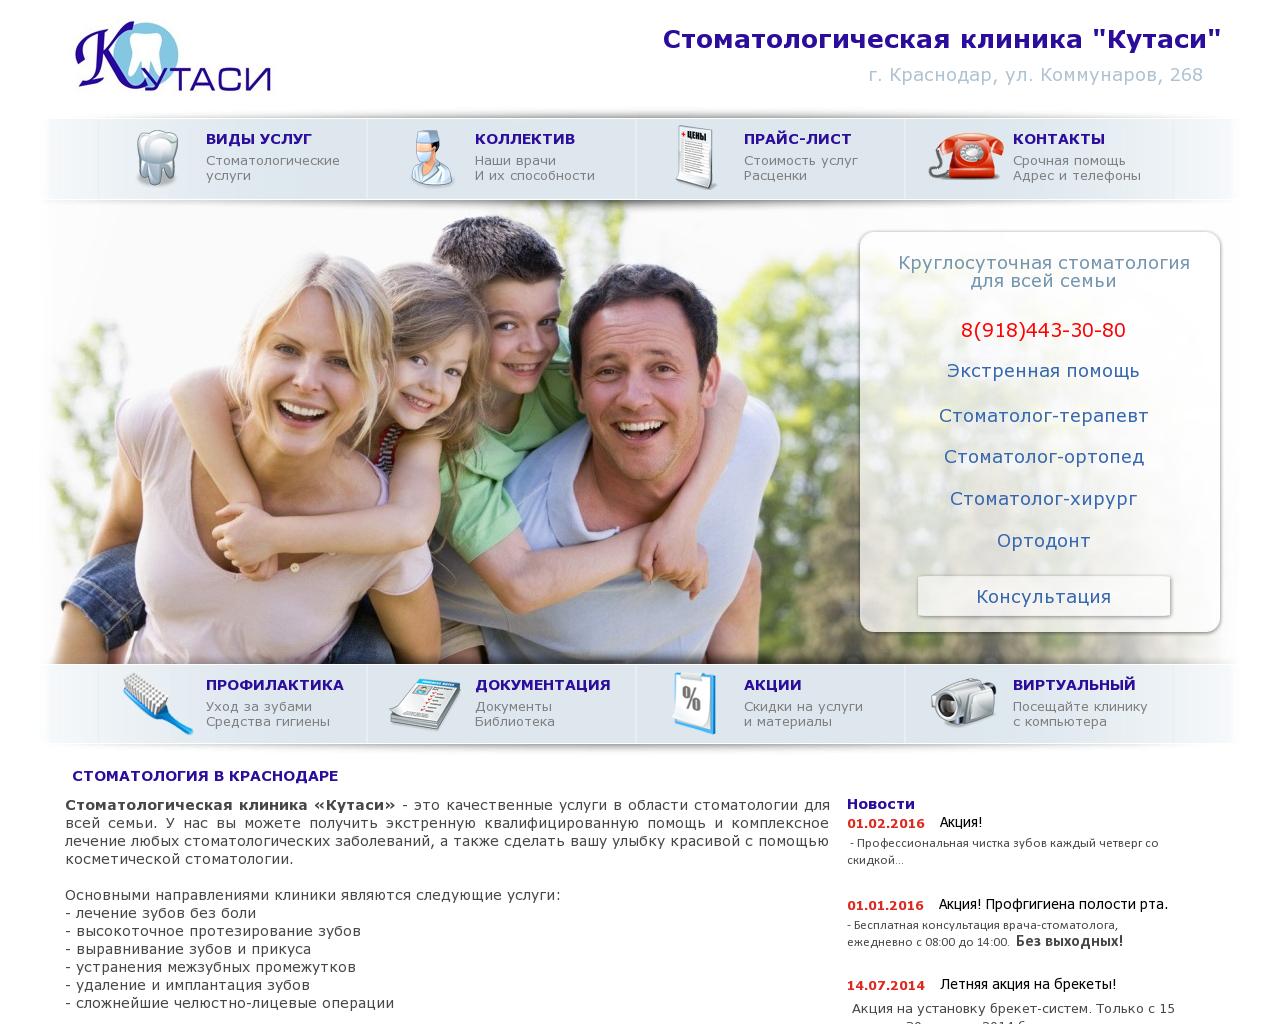 Изображение сайта kutasi.ru в разрешении 1280x1024